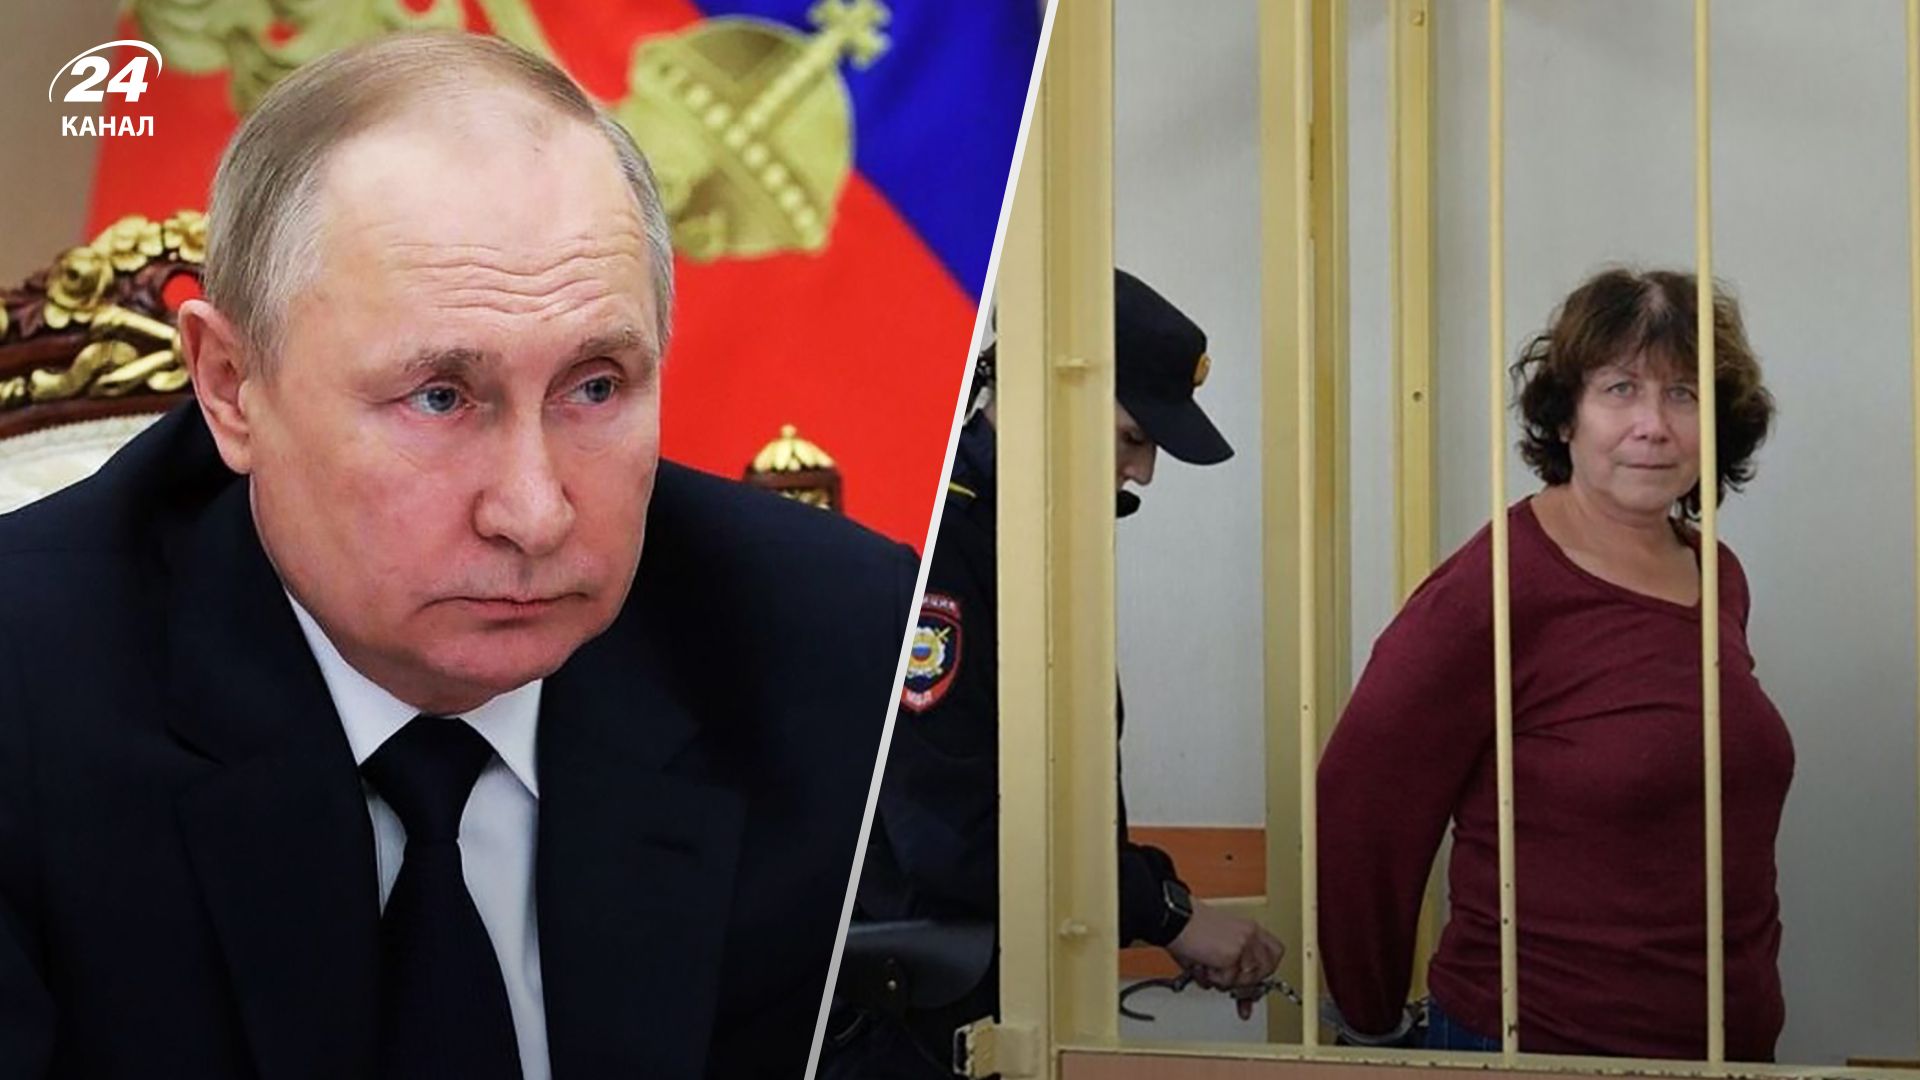 Ірина Цибанева просила батьків Володимира Путіна забрати сина на той світ - як її покарали